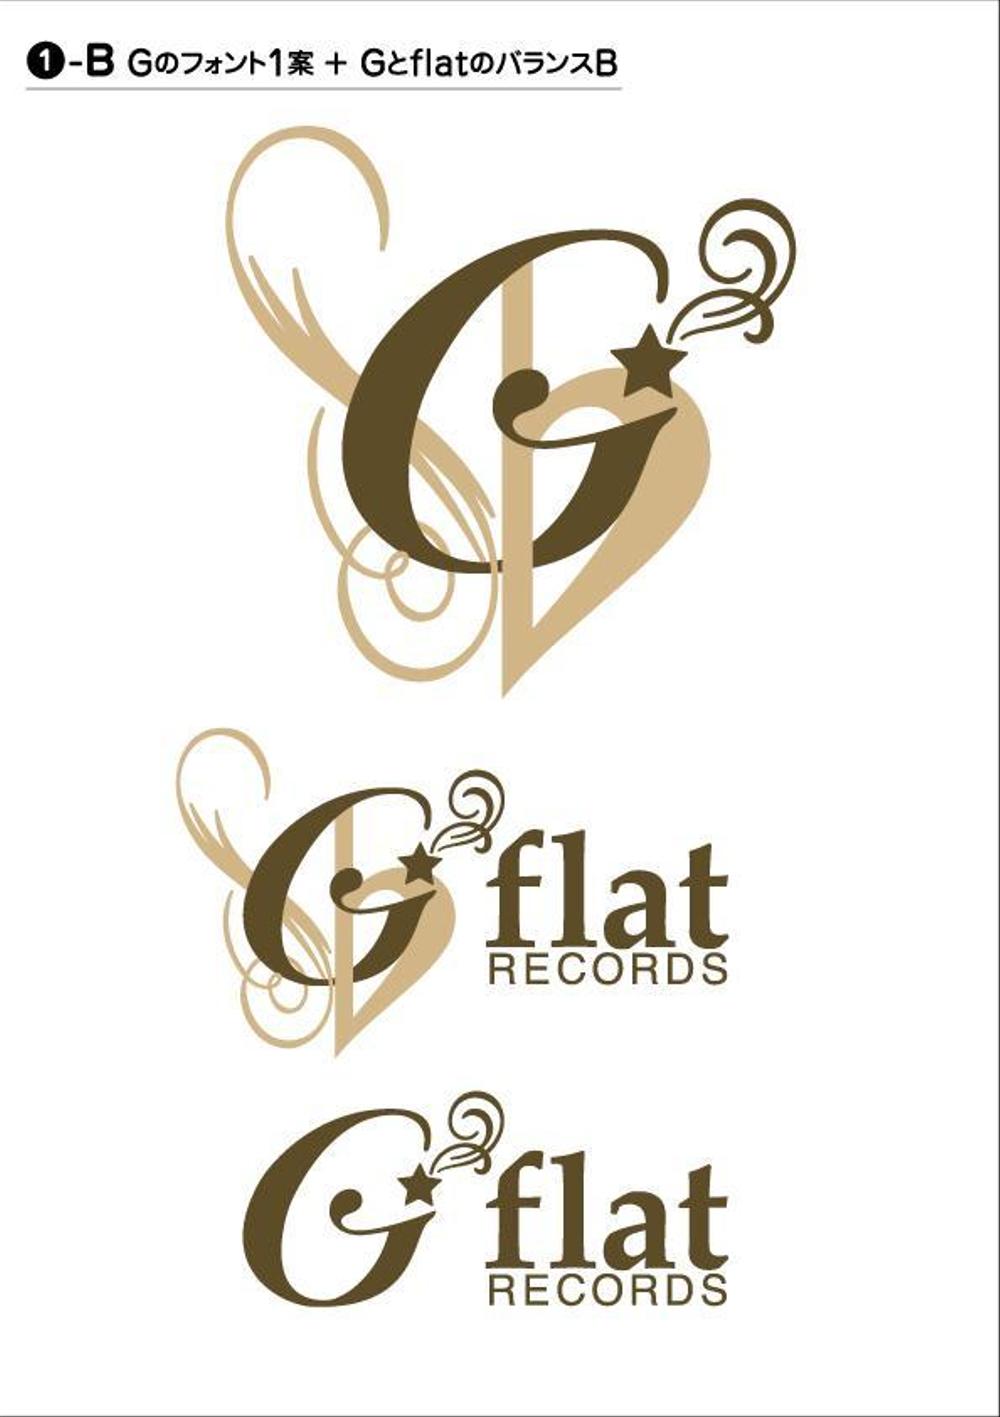 インディーズ音楽レーベル「G-flat Records」のロゴ作成